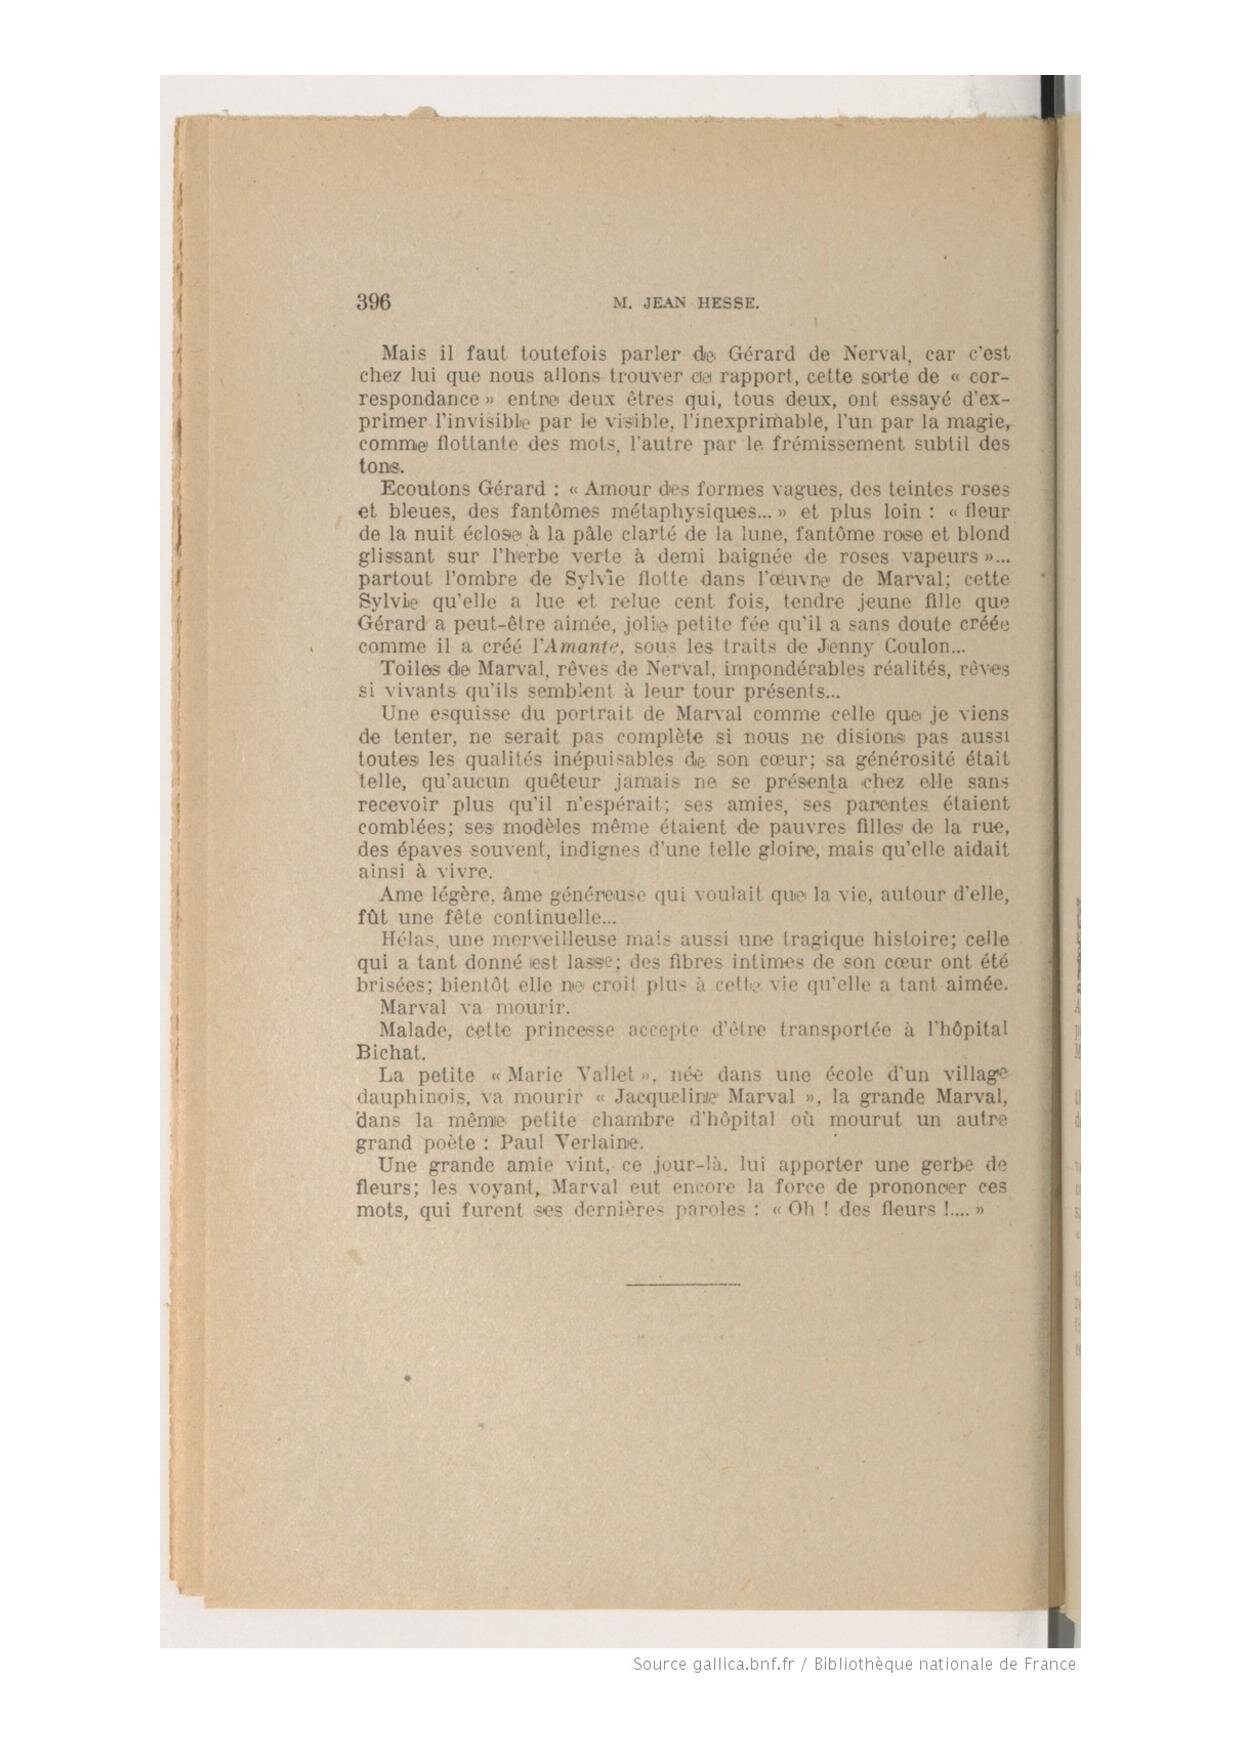 Bulletin de l'Académie Delphinale, Jean Hesse, 1946 (Copy)